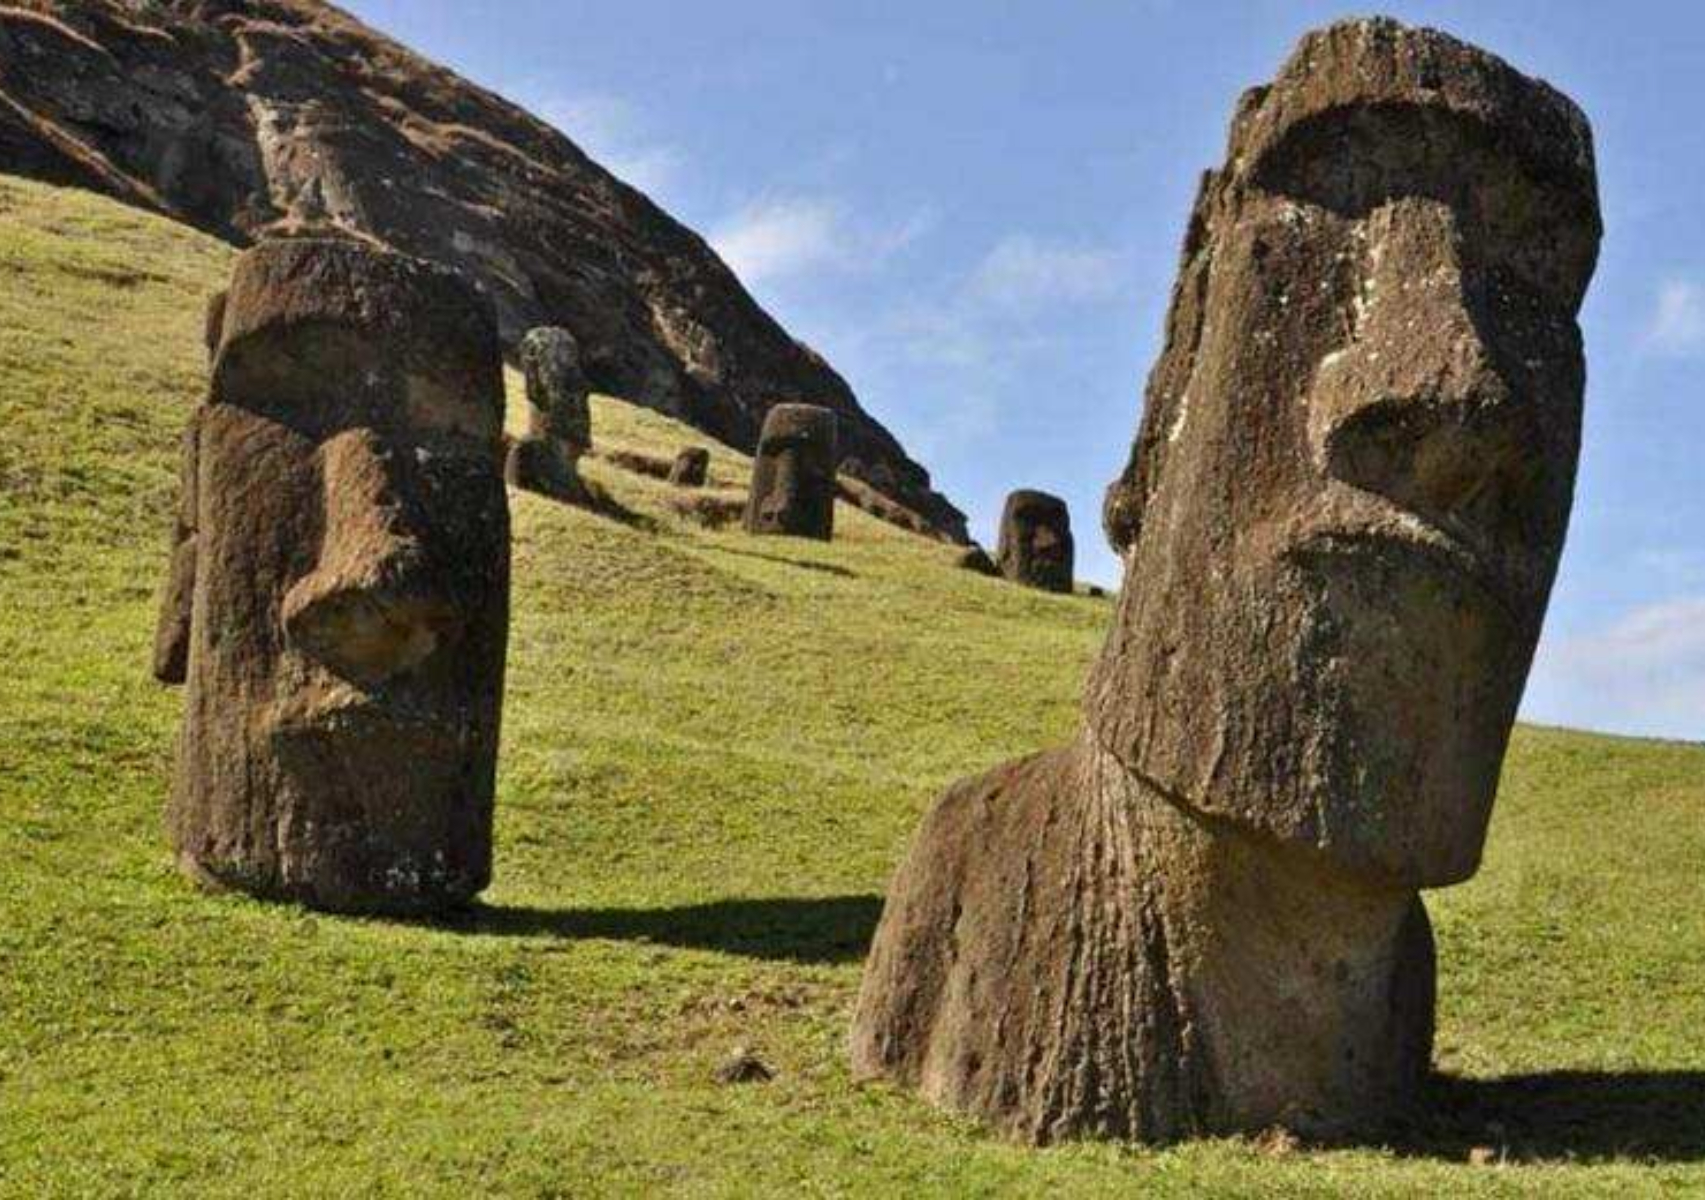 Νησί του Πάσχα: Το μυστήριο με τα αγάλματα που περπατούν- Που σταματά η αλήθεια και που αρχίζει ο μύθος